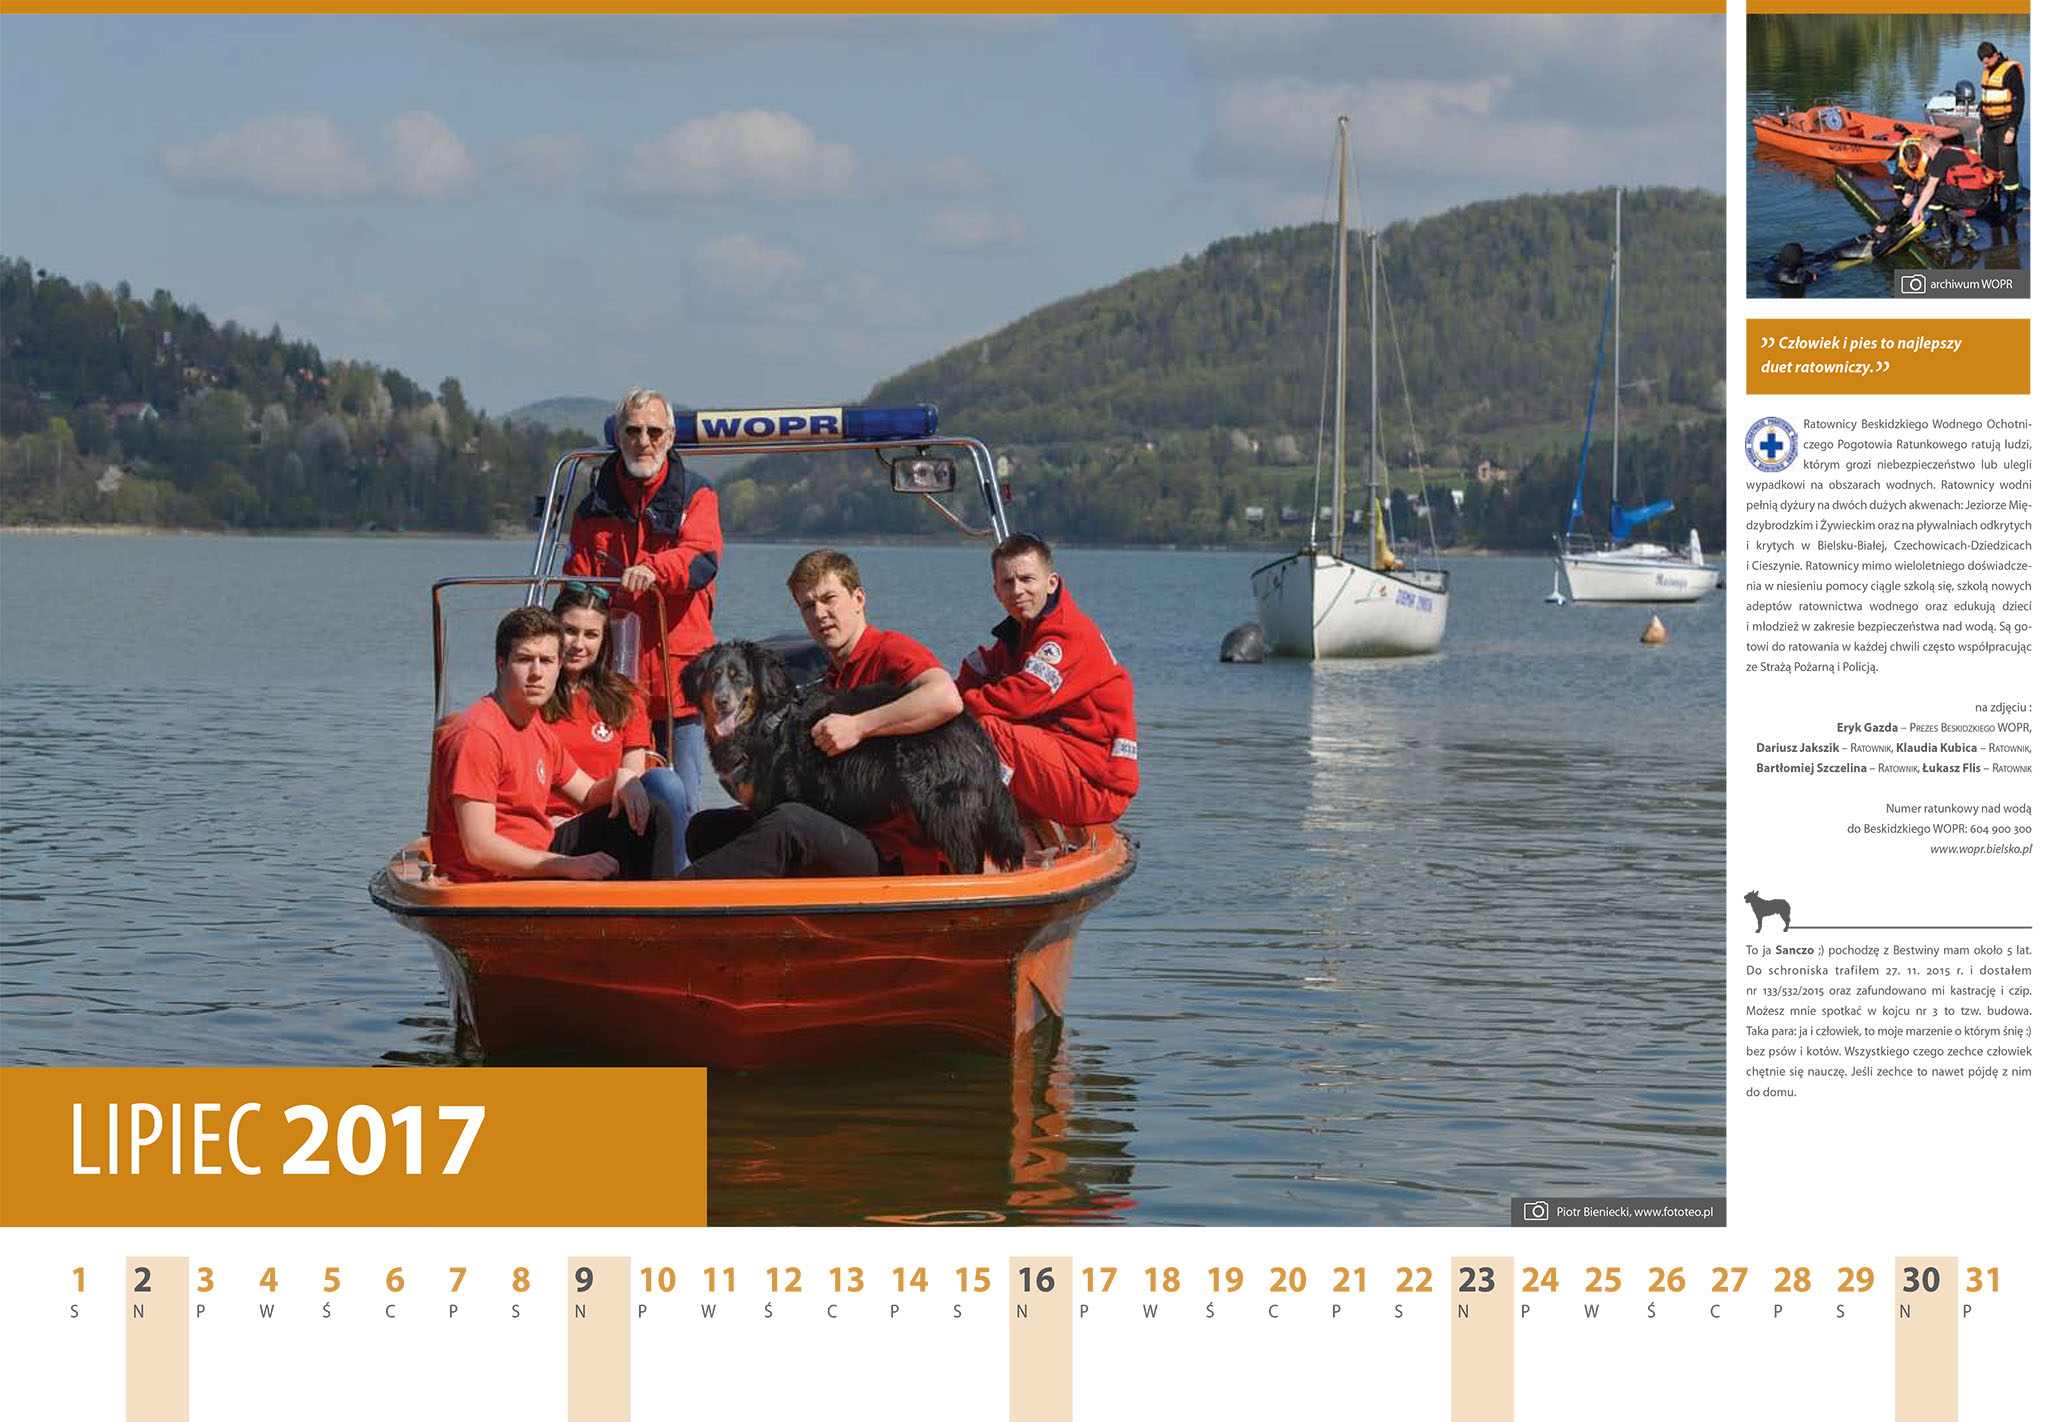 Kalendarz 2017 lipiec. Ratownicy Beskidzkiego WOPR